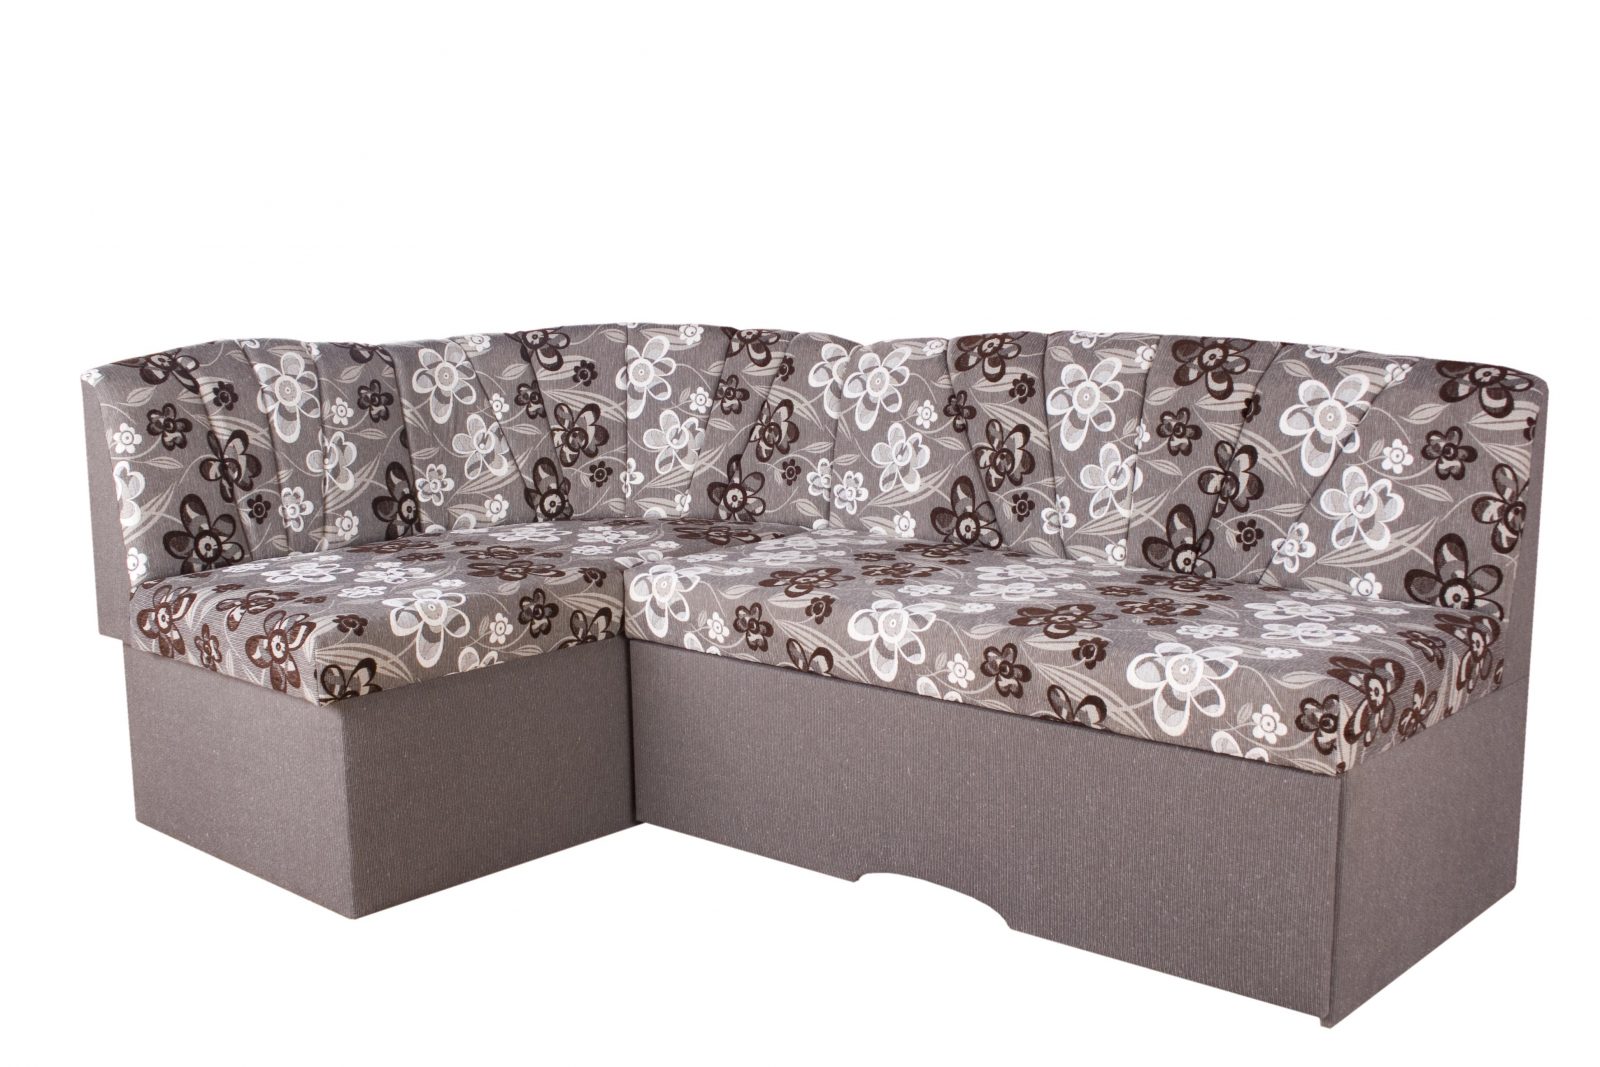 Трапезен ъглов диван  | стандарт |“АМ-АМ“| Руди-Ан